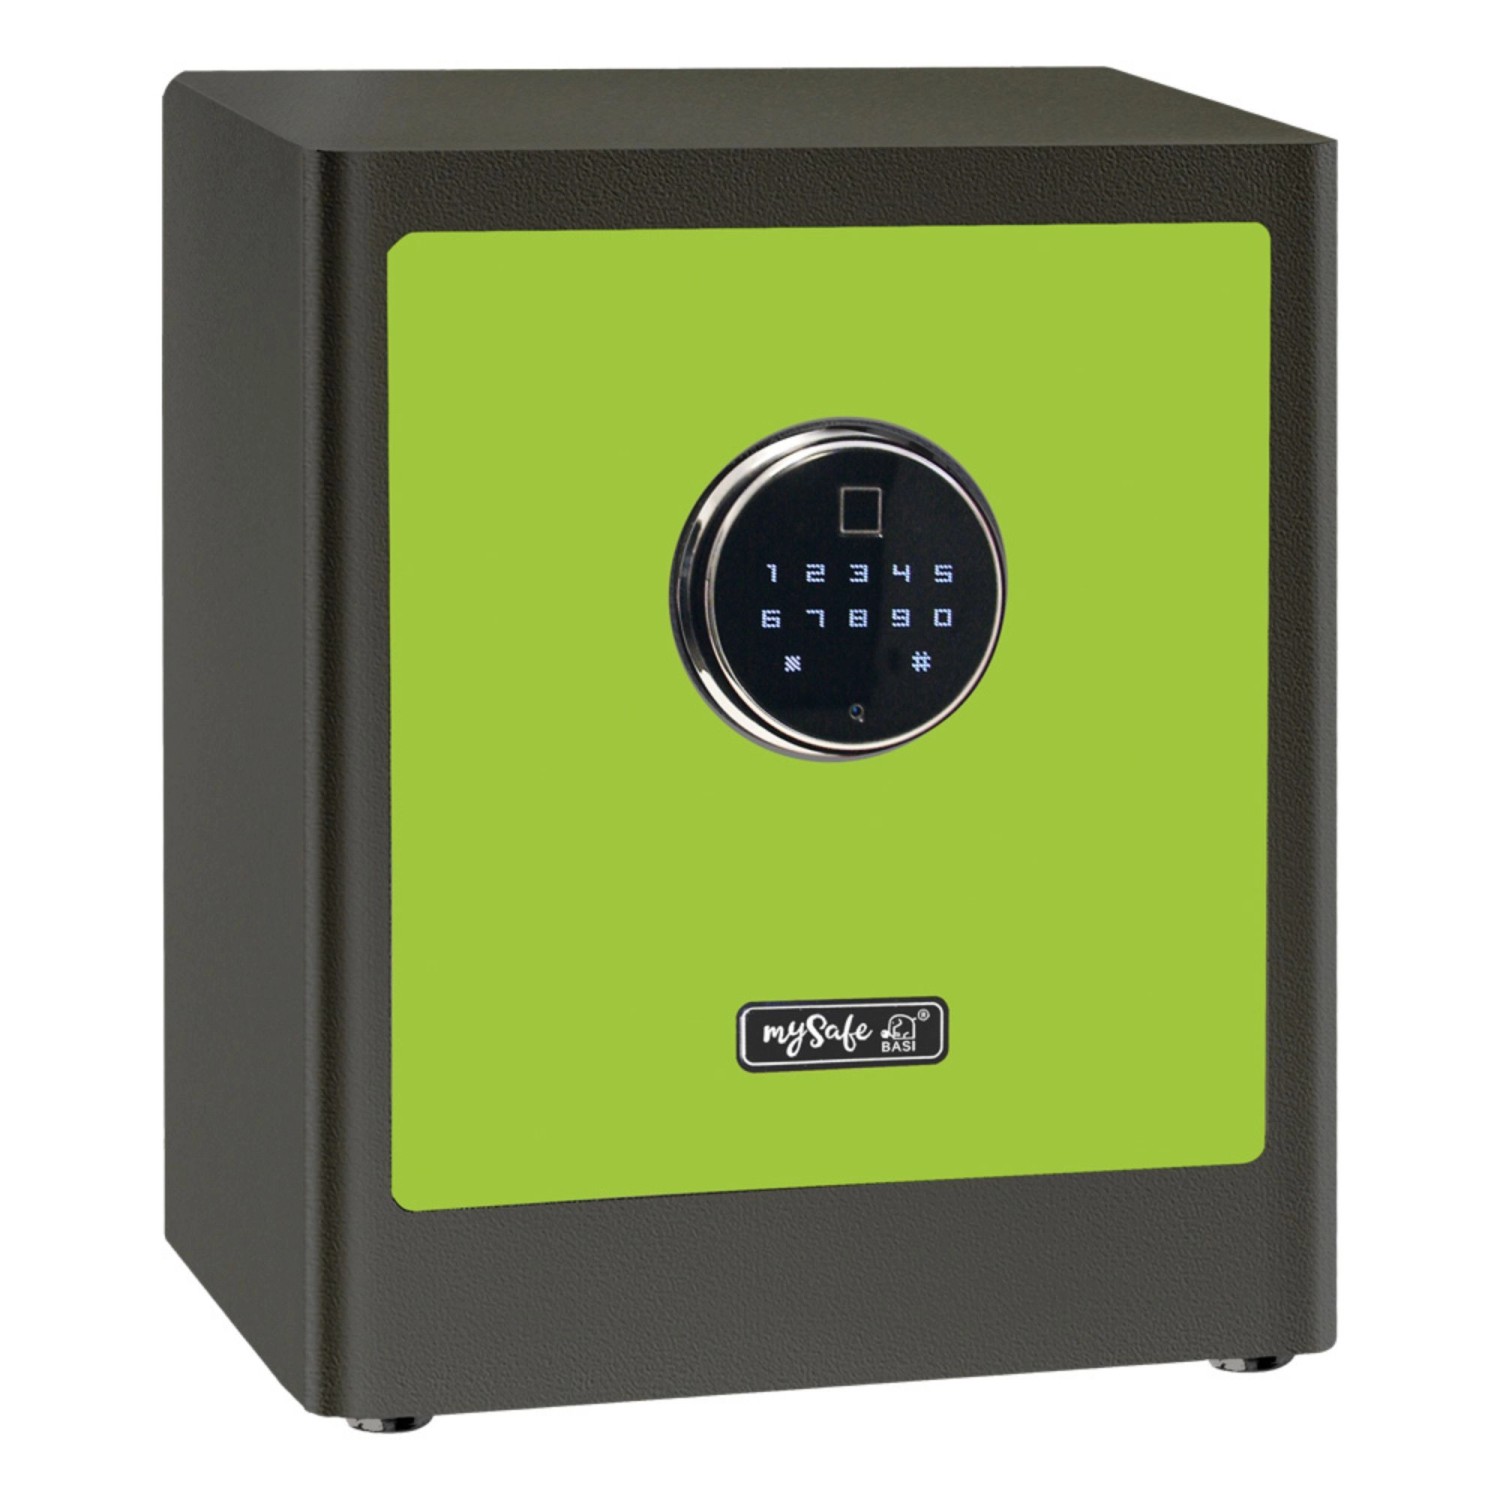 mySafe Premium - Elektronik-Möbel-Tresor - 350 - Code & Fingerprint - Grün-Grau - 2020-0000-1215